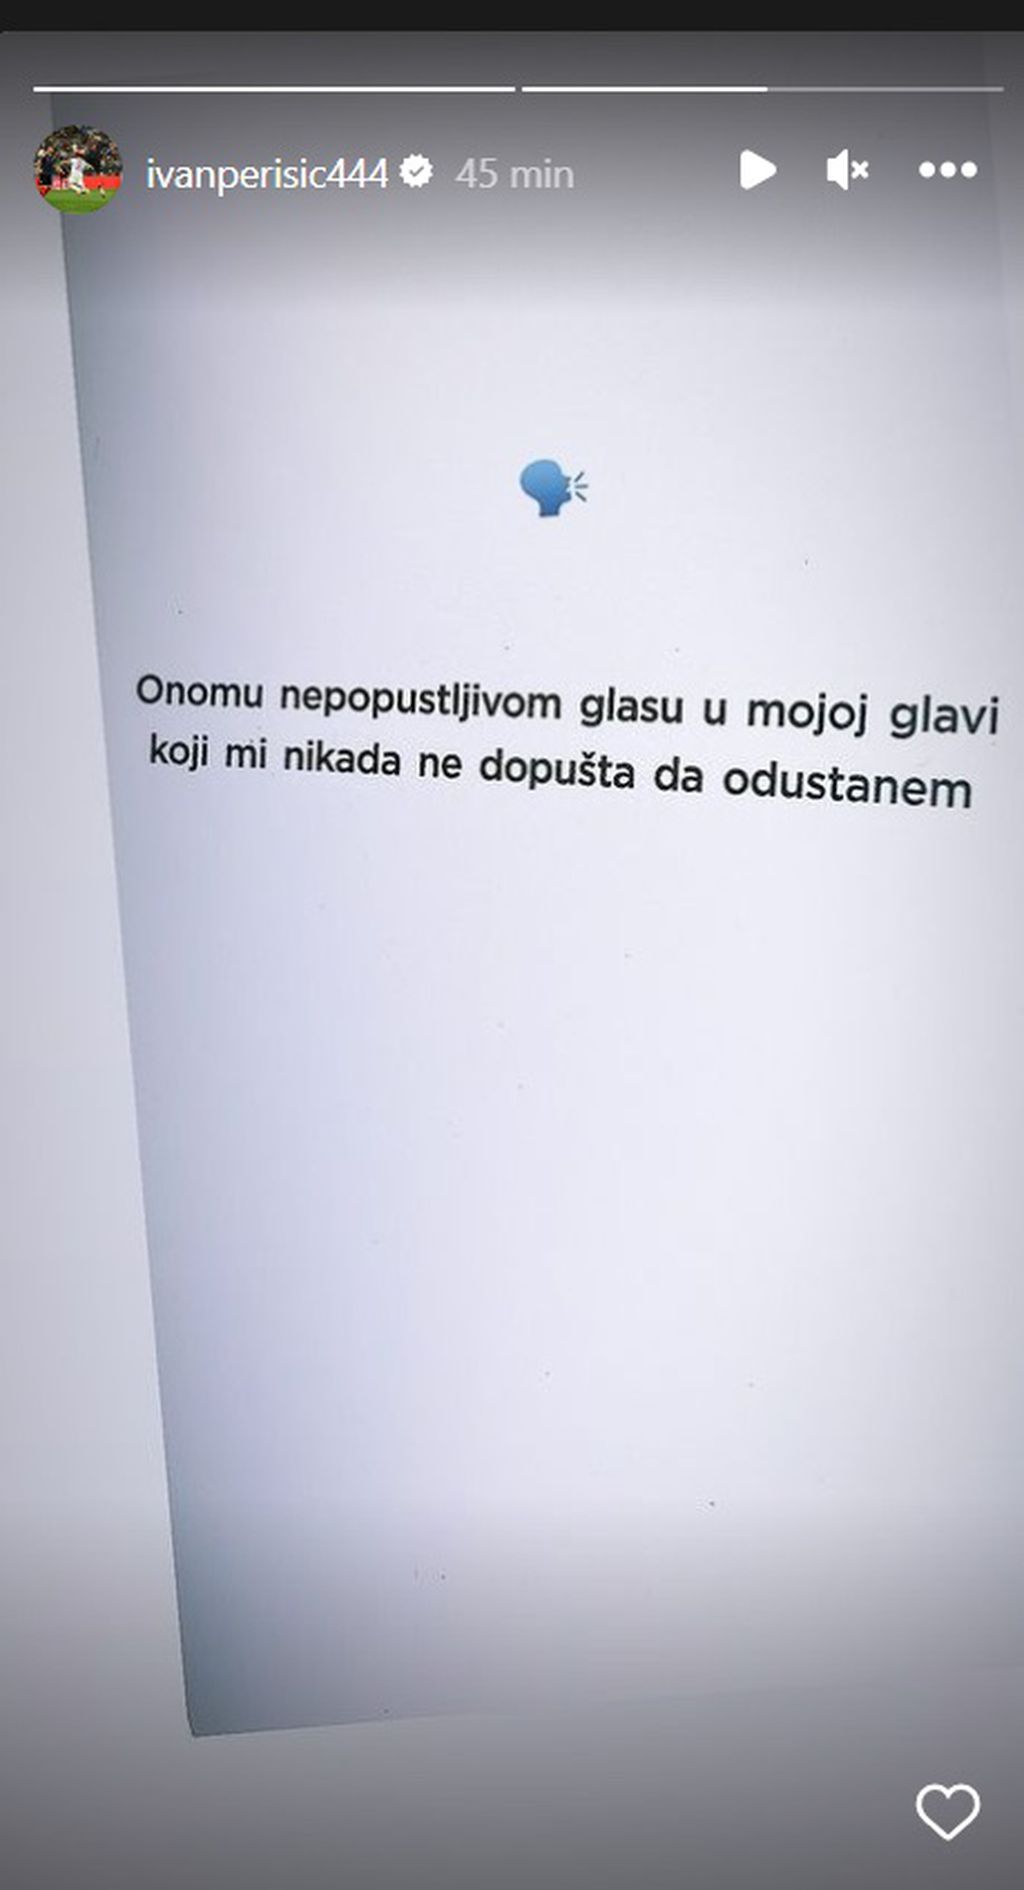 Objava Ivana Perišića